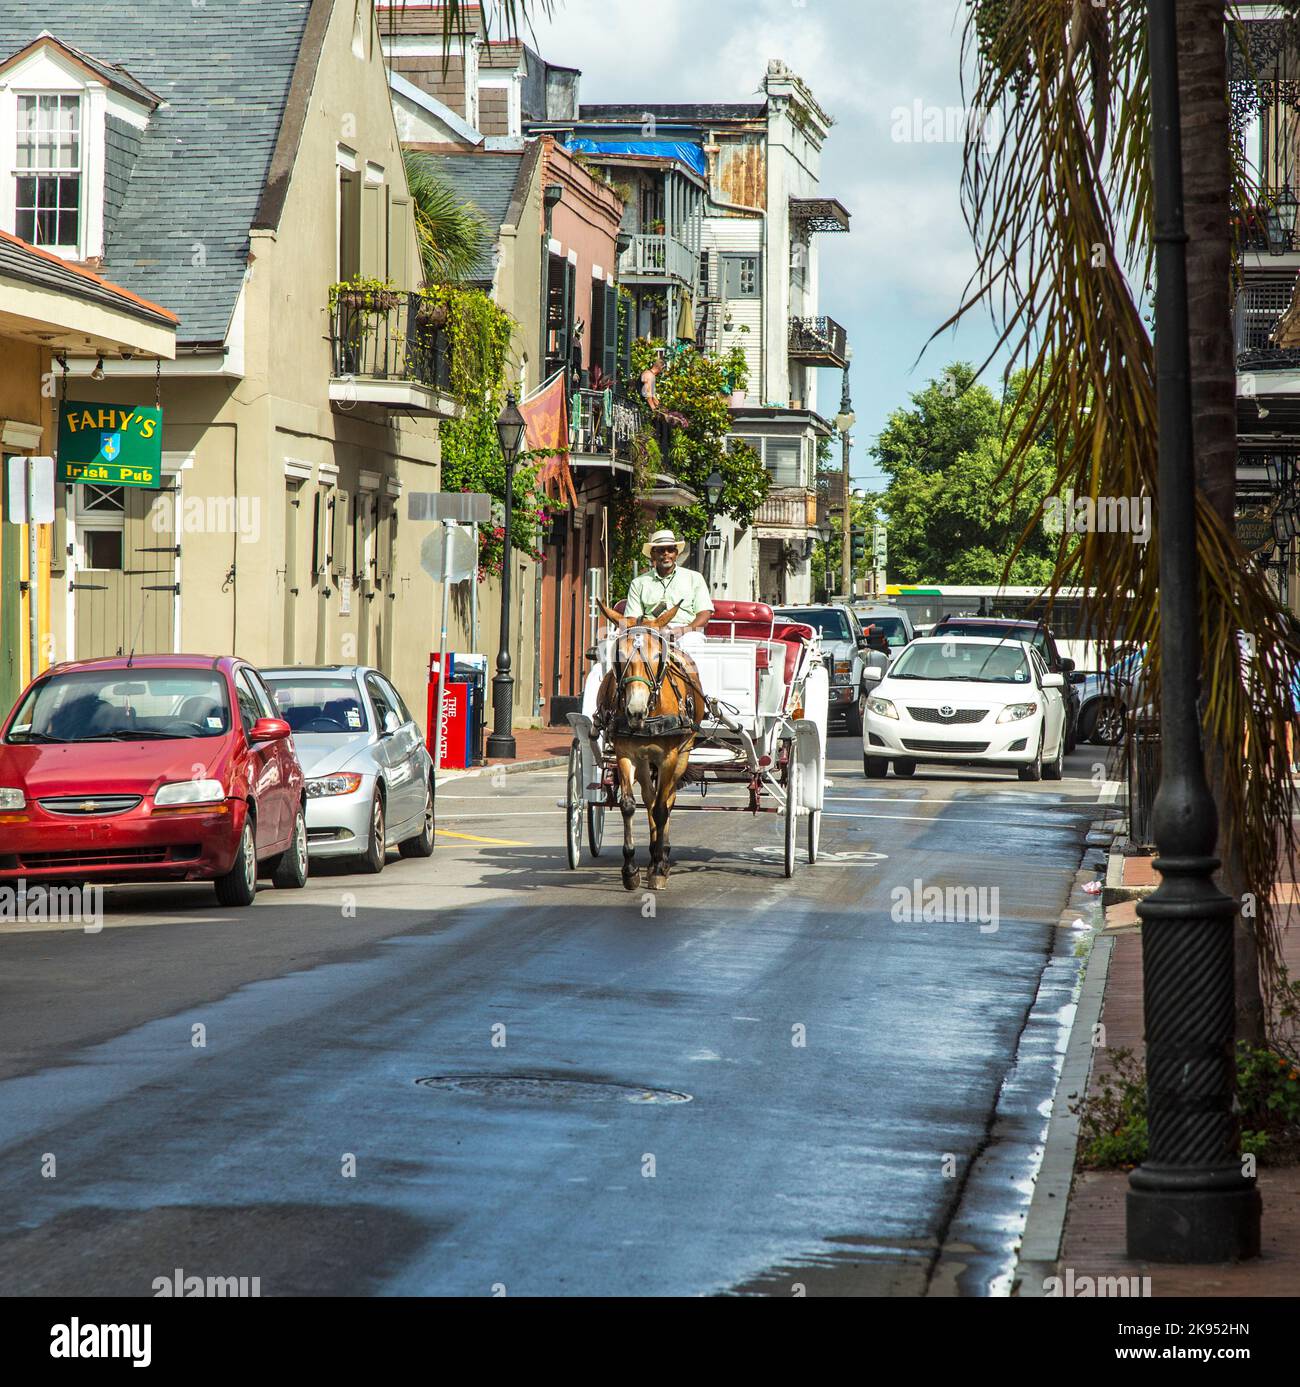 NEW ORLEANS, Stati Uniti d'America - 17 LUGLIO: Corse con carretto a cavallo a Jackson Square il 27 luglio 2013 a New Orleans, Stati Uniti. Le carrozze possono ospitare fino a quattro persone e c Foto Stock